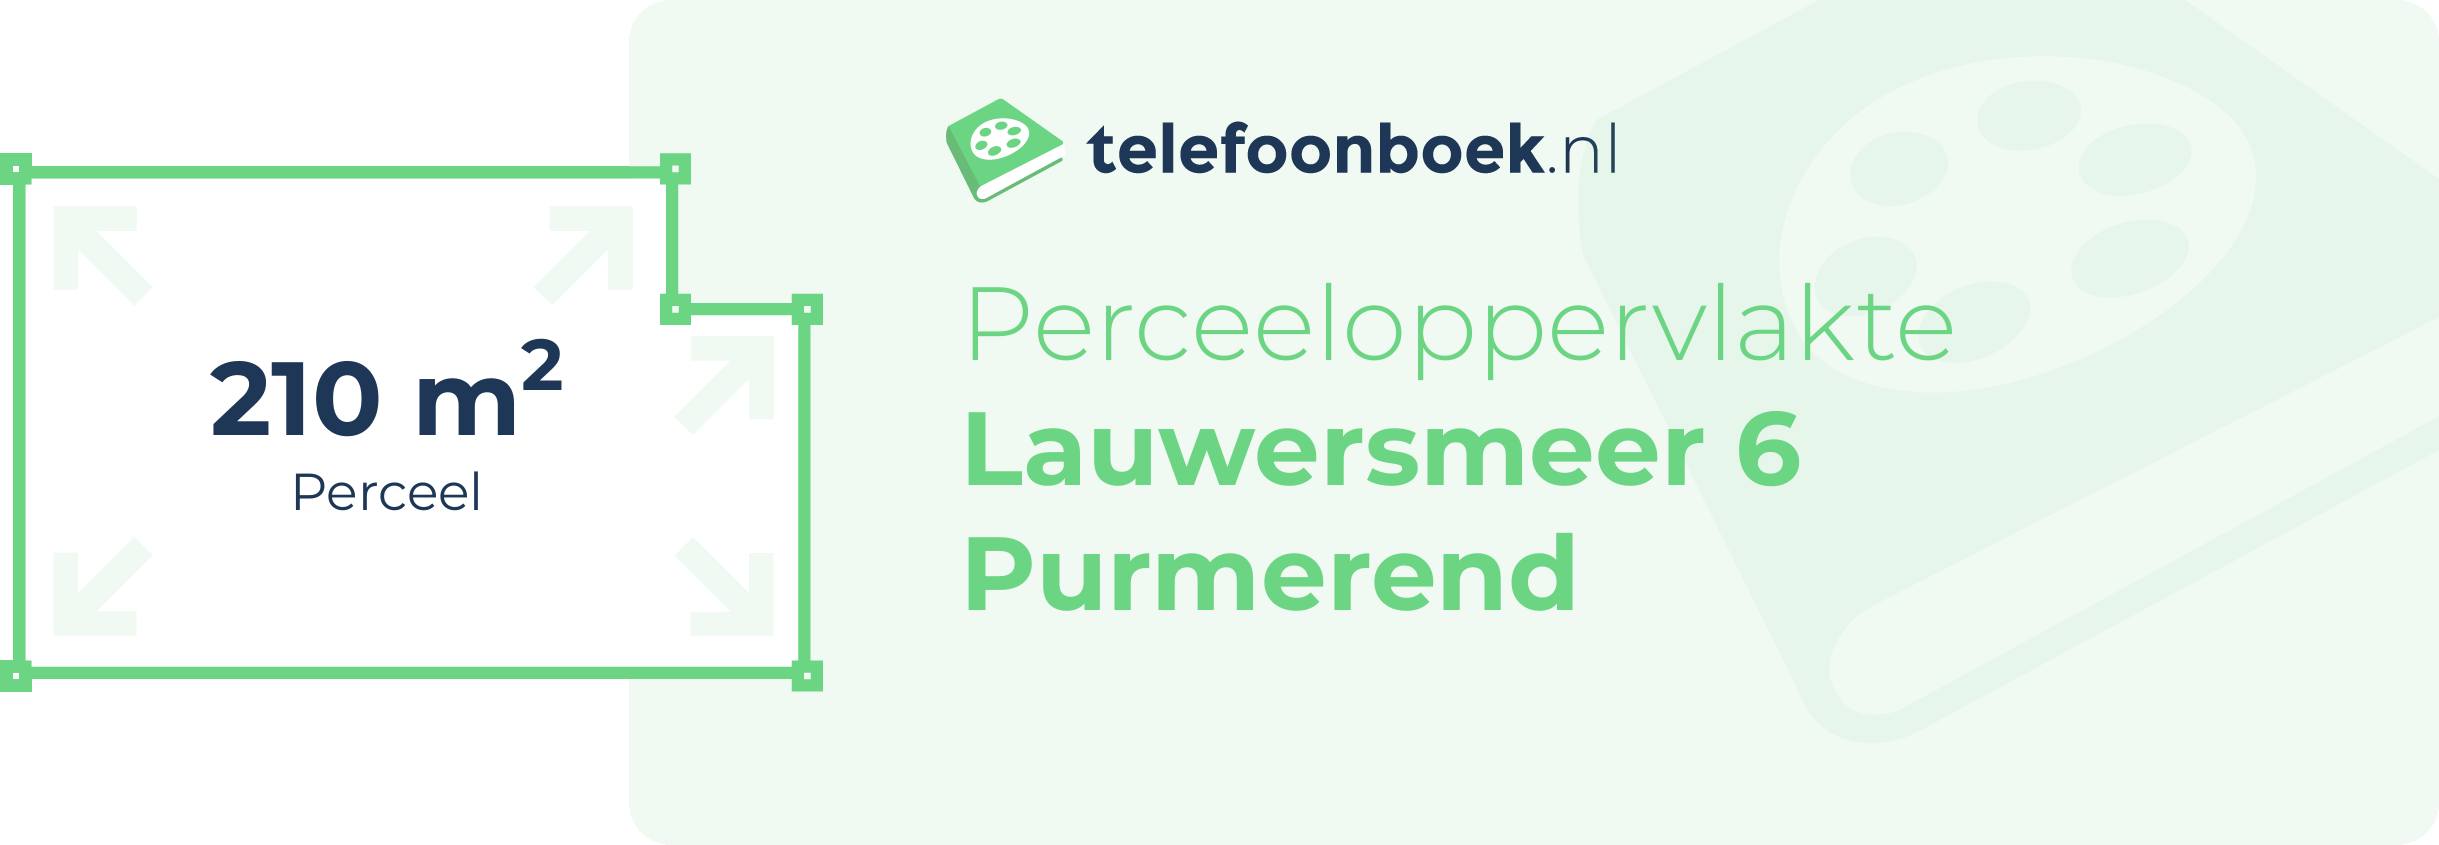 Perceeloppervlakte Lauwersmeer 6 Purmerend